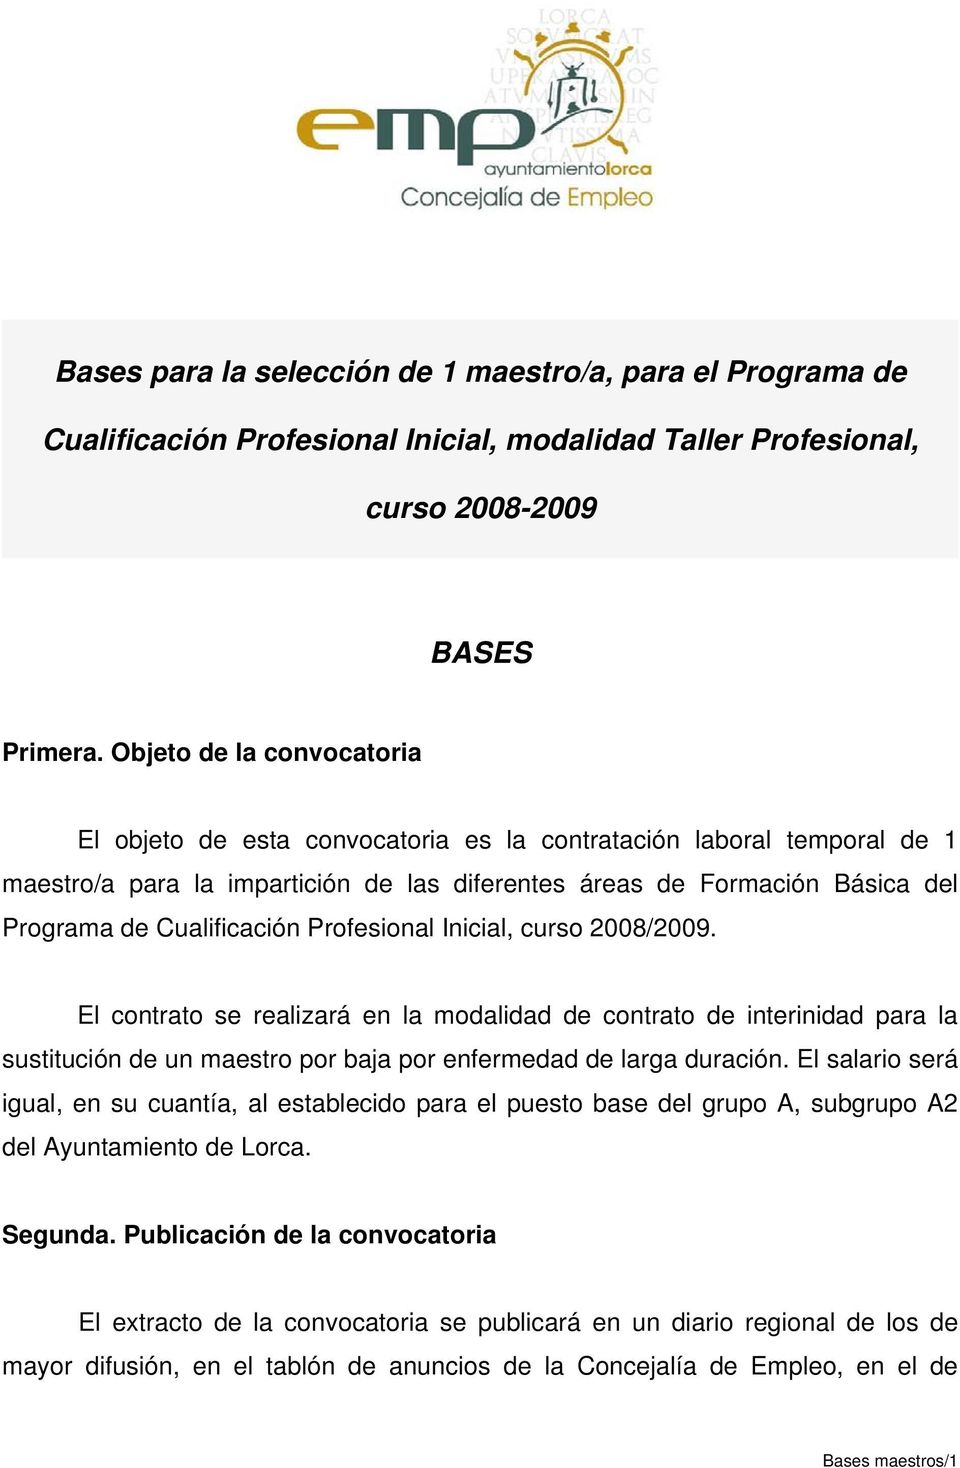 Cualificación Profesional Inicial, curso 2008/2009. El contrato se realizará en la modalidad de contrato de interinidad para la sustitución de un maestro por baja por enfermedad de larga duración.